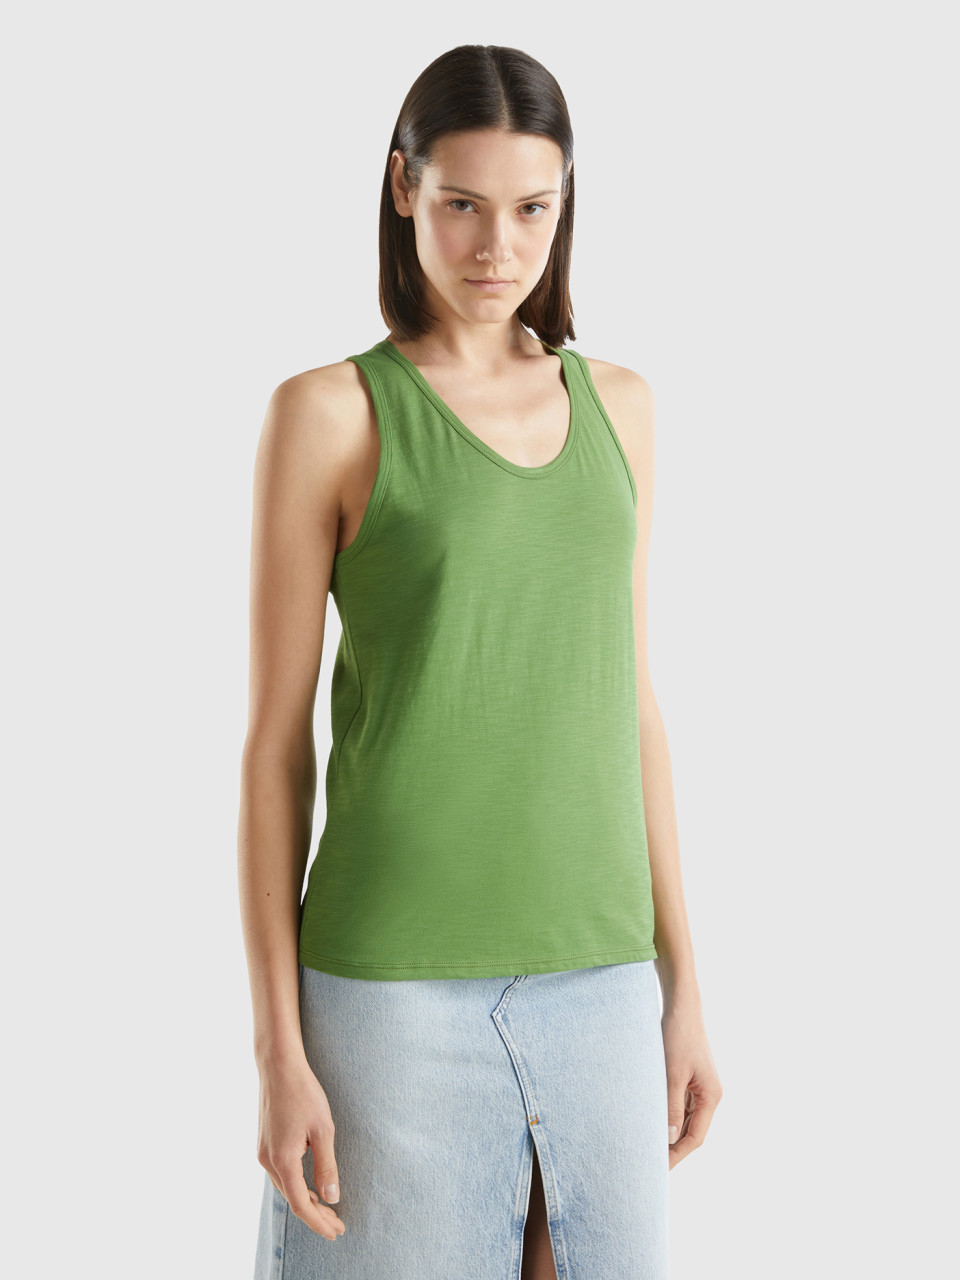 Benetton, Camiseta De Tirantes De Algodón Ligero, Militar, Mujer